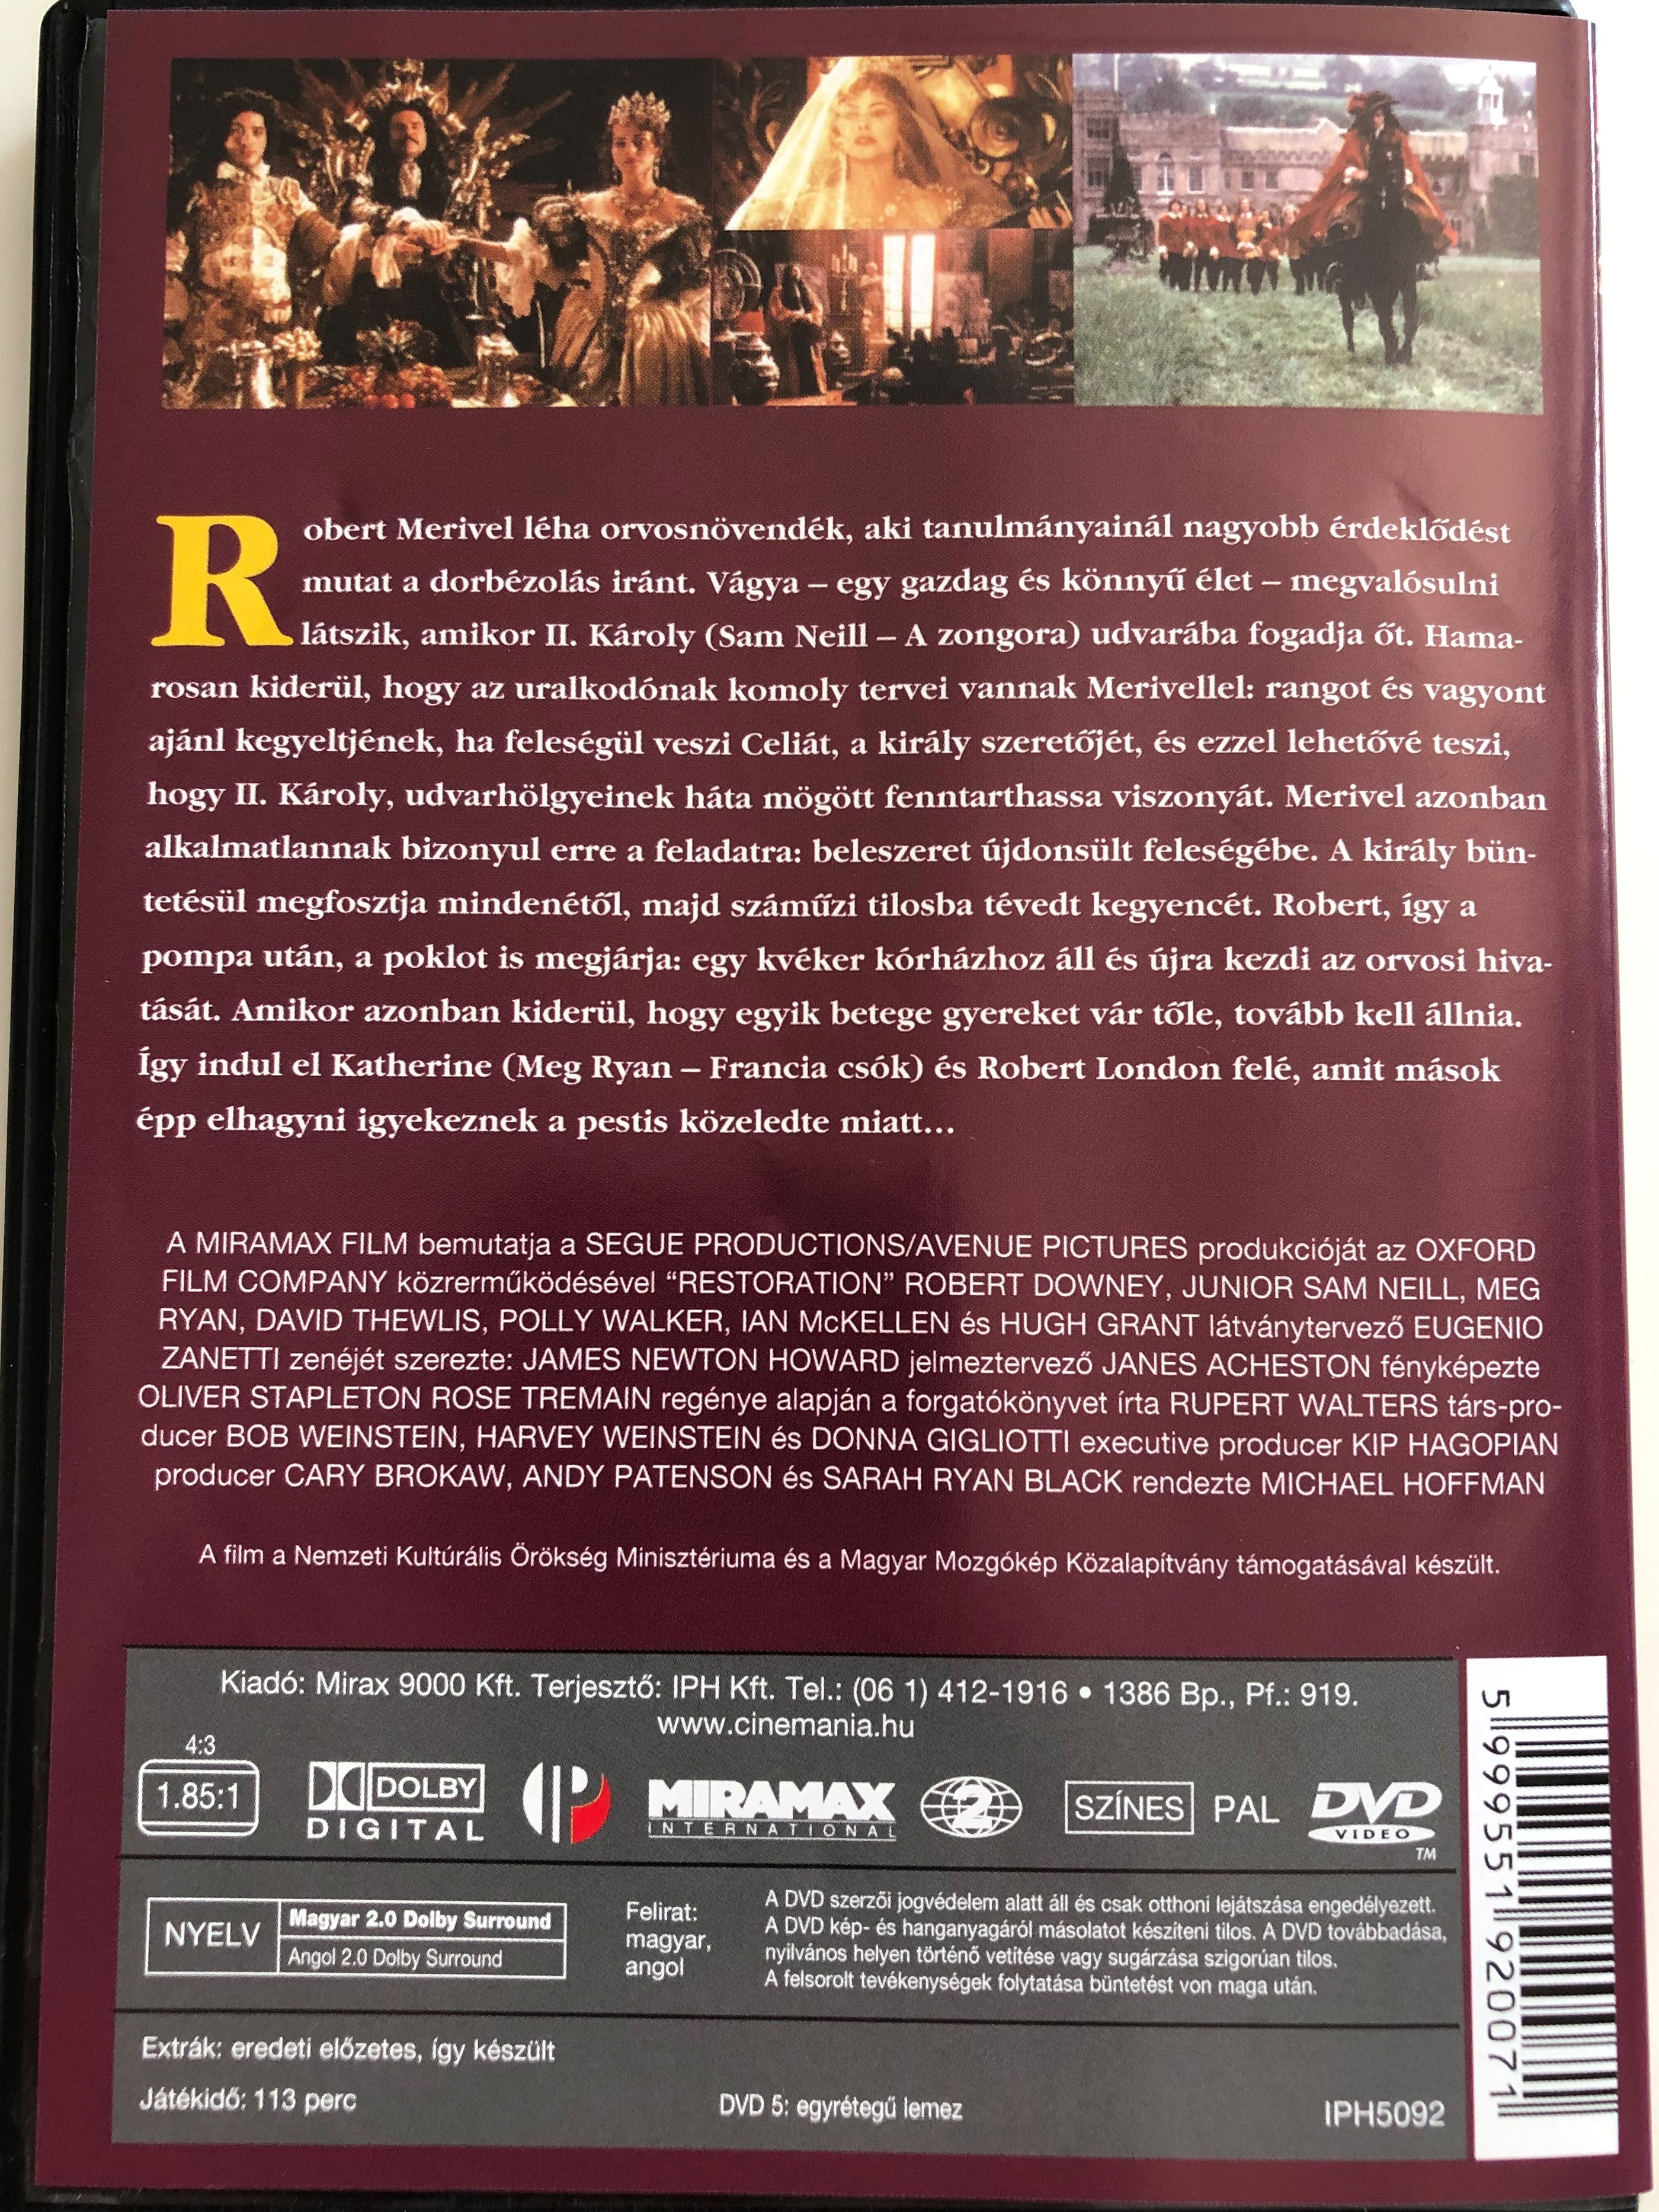 restoration-dvd-1995-v-ltoz-sok-kora-directed-by-michael-hoffman-starring-robert-downey-jr.-sam-neill-meg-ryan-david-thewlis-polly-walker-ian-mckellen-hugh-grant-2-.jpg